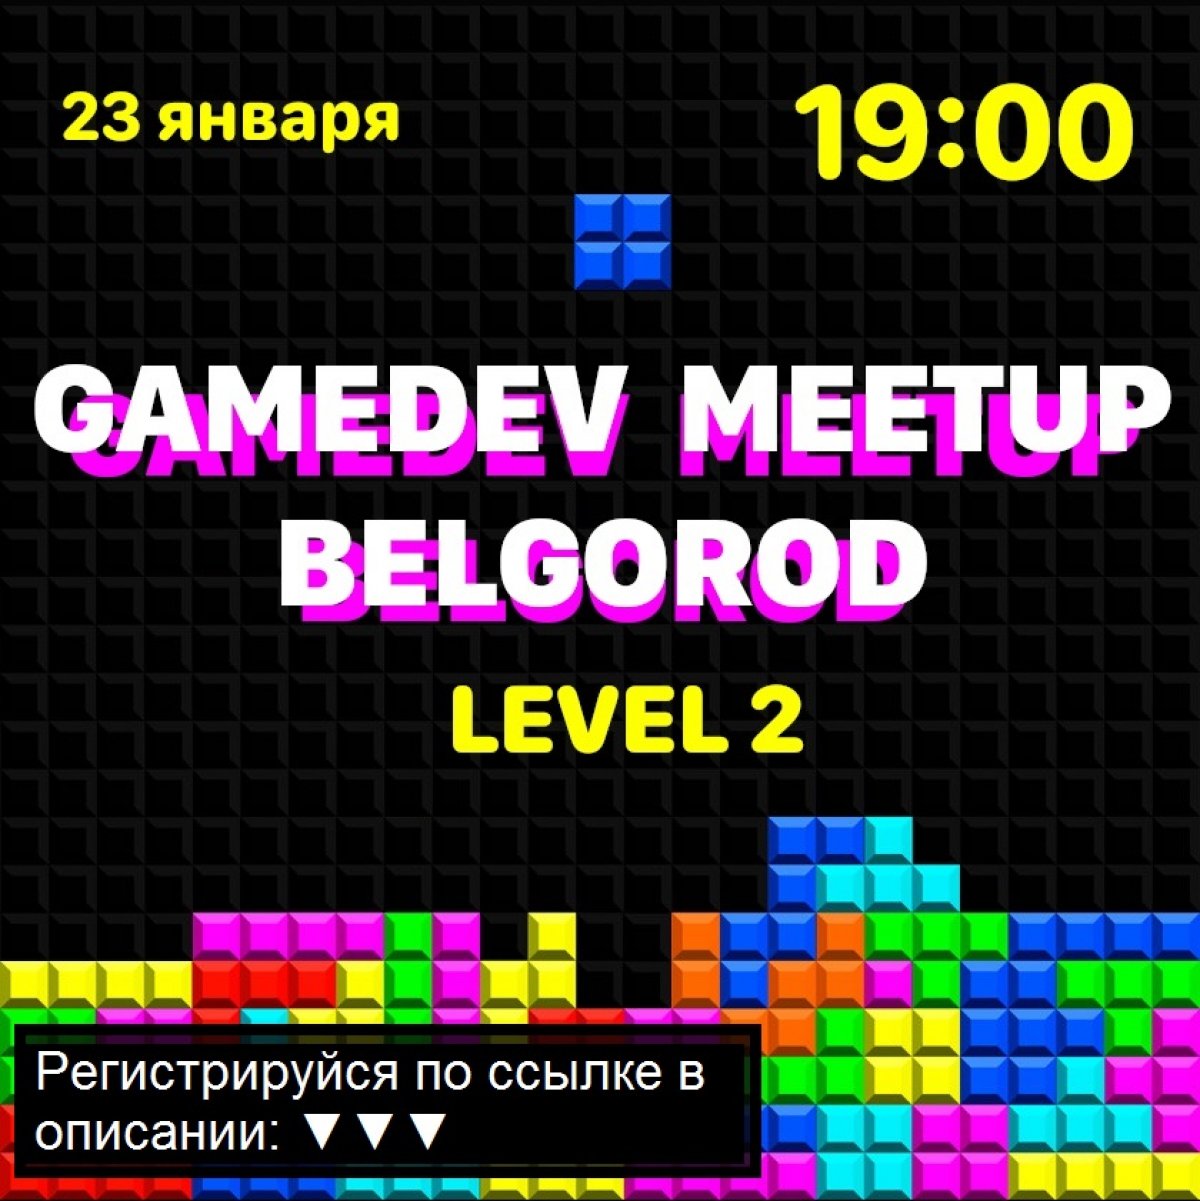 Белгородский IT-кластер приглашает всех неравнодушных к игровой разработке на GameDev Meetup level 2.